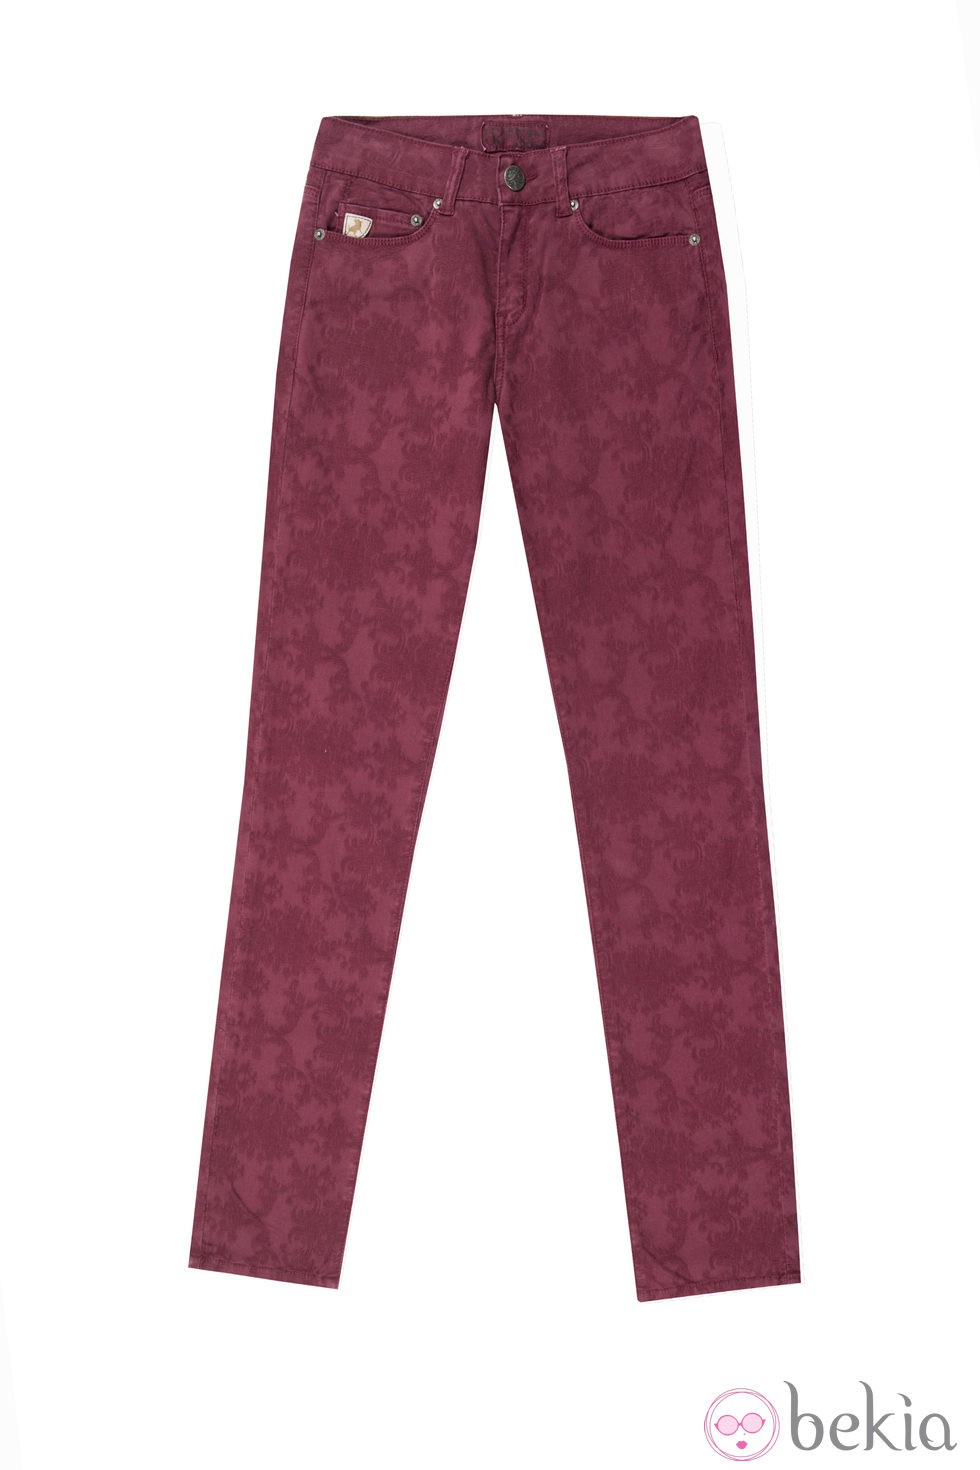 Pantalón estampado de la colección otoño/invierno 2013 de Lois